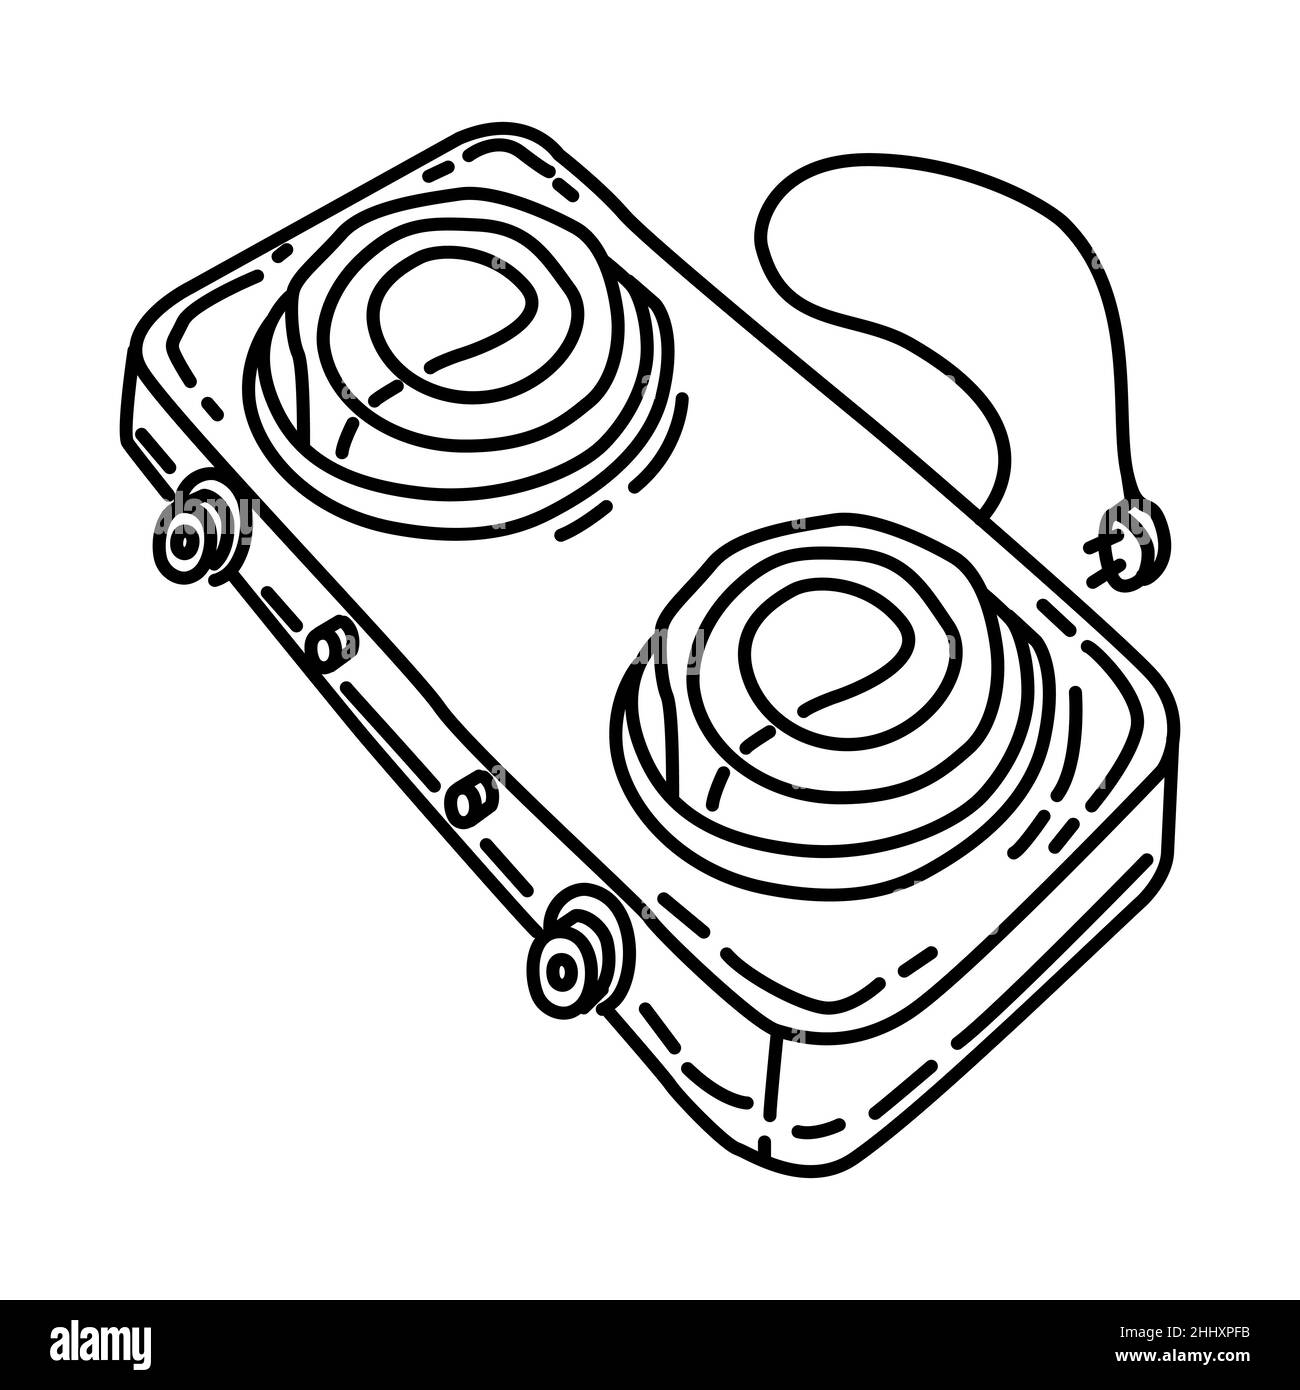 Stufa elettrica parte di elettronica per cucina e lavatrice dispositivo disegno a mano icona Set Vector. Illustrazione Vettoriale